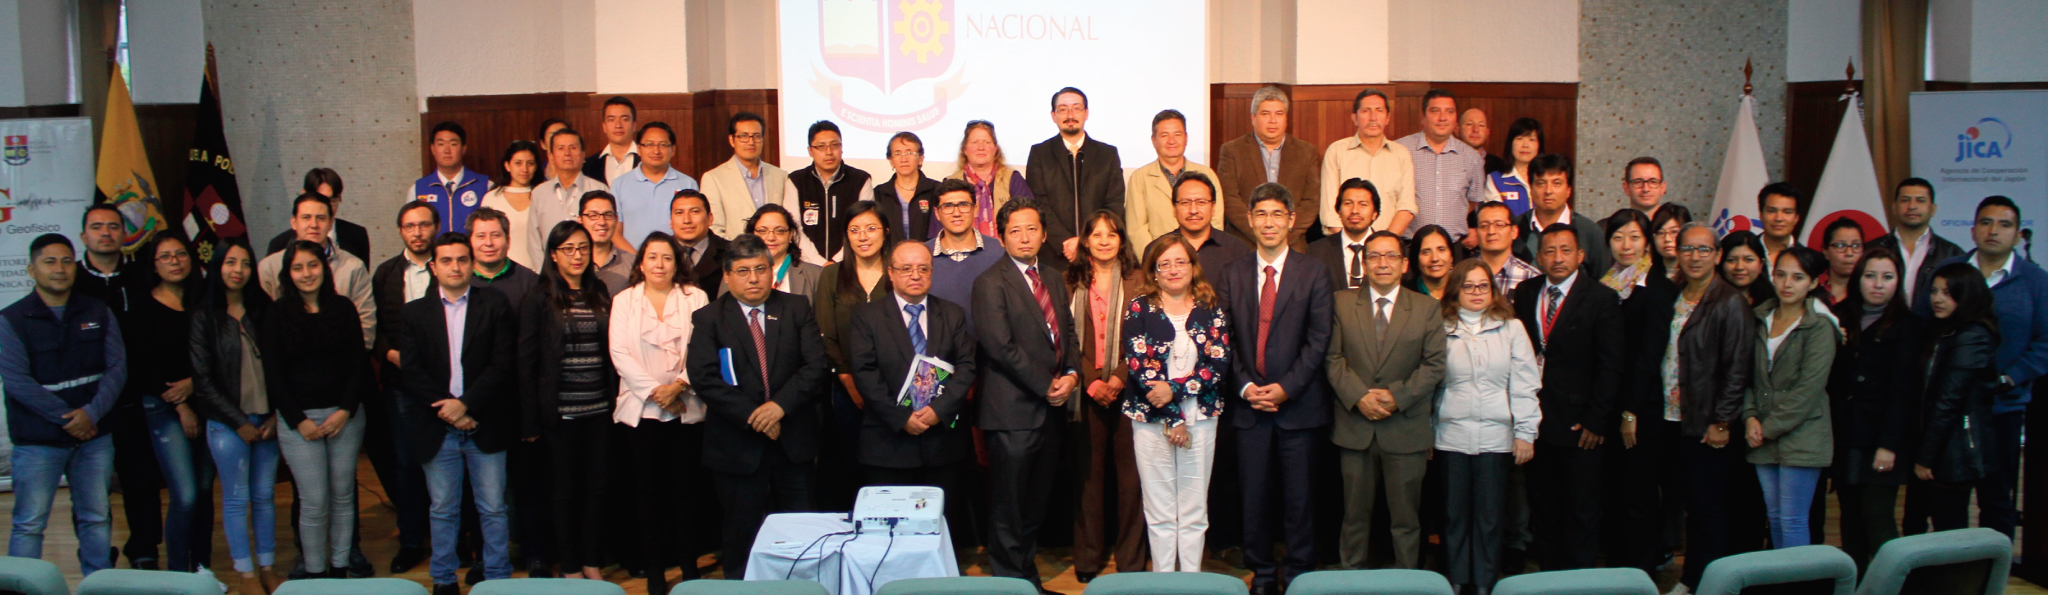 El Instituto Geofísico fue galardonado por su aporte en la disminución del riesgo de desastres en Ecuador